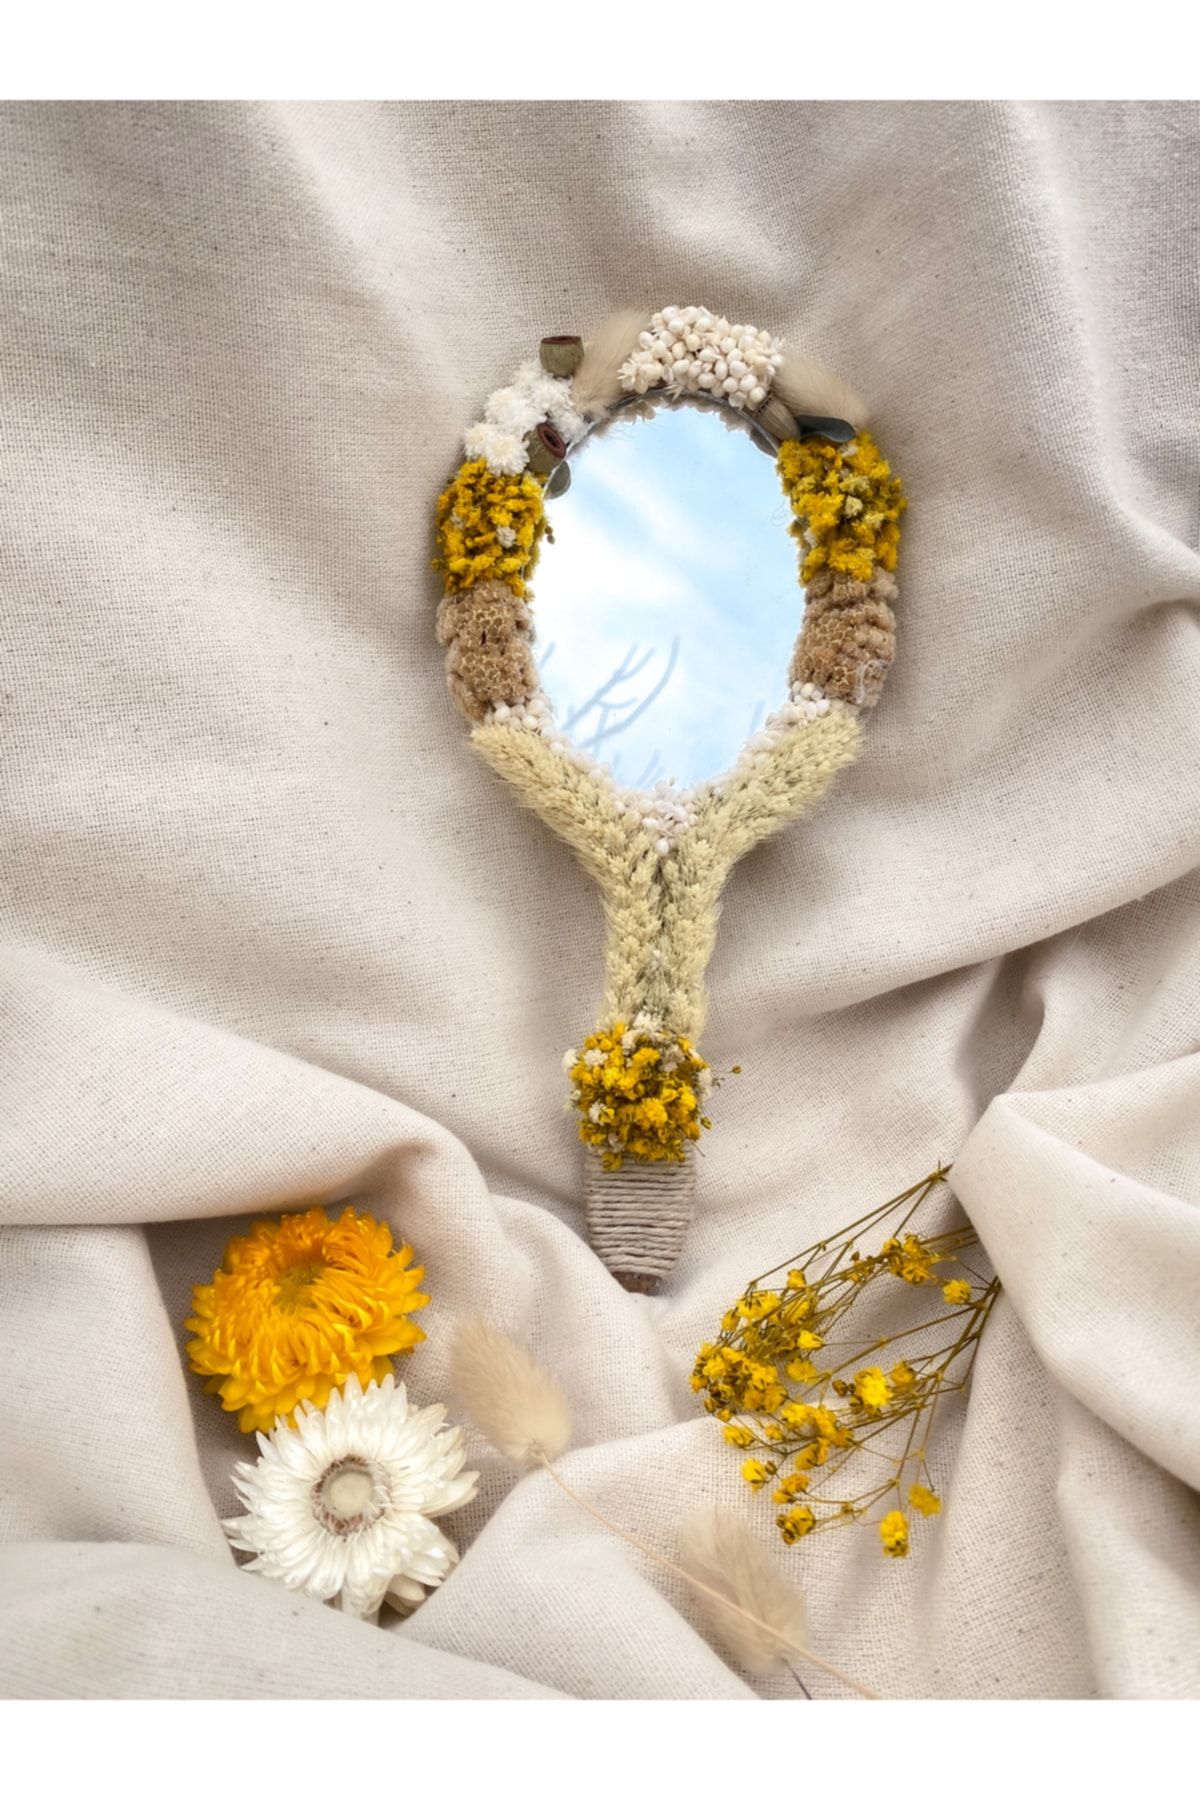 Flawless El Aynası, Şoklanmış Çiçeklerle Süslenmiş El Aynası, Makyaj Aynası, Sevgililer Günü Hediyesi